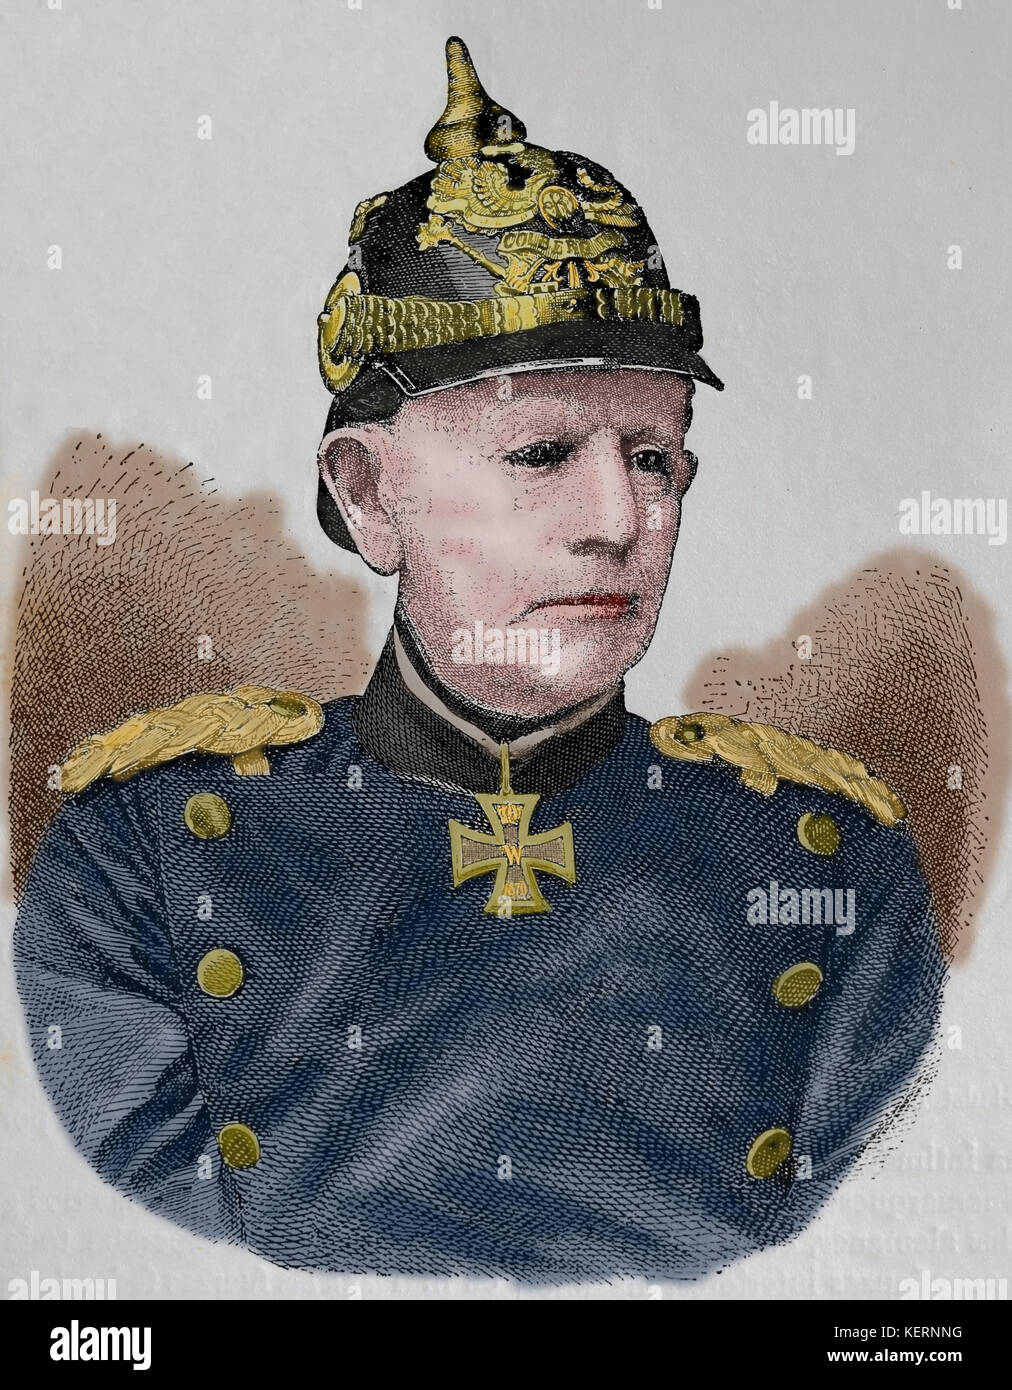 Helmuth von Moltke l'ancien (1800-1891), le maréchal allemand.. chef d'état-major de l'armée prussienne. gravure, nuestro siglo, 1883, Barcelone, Espagne. Banque D'Images